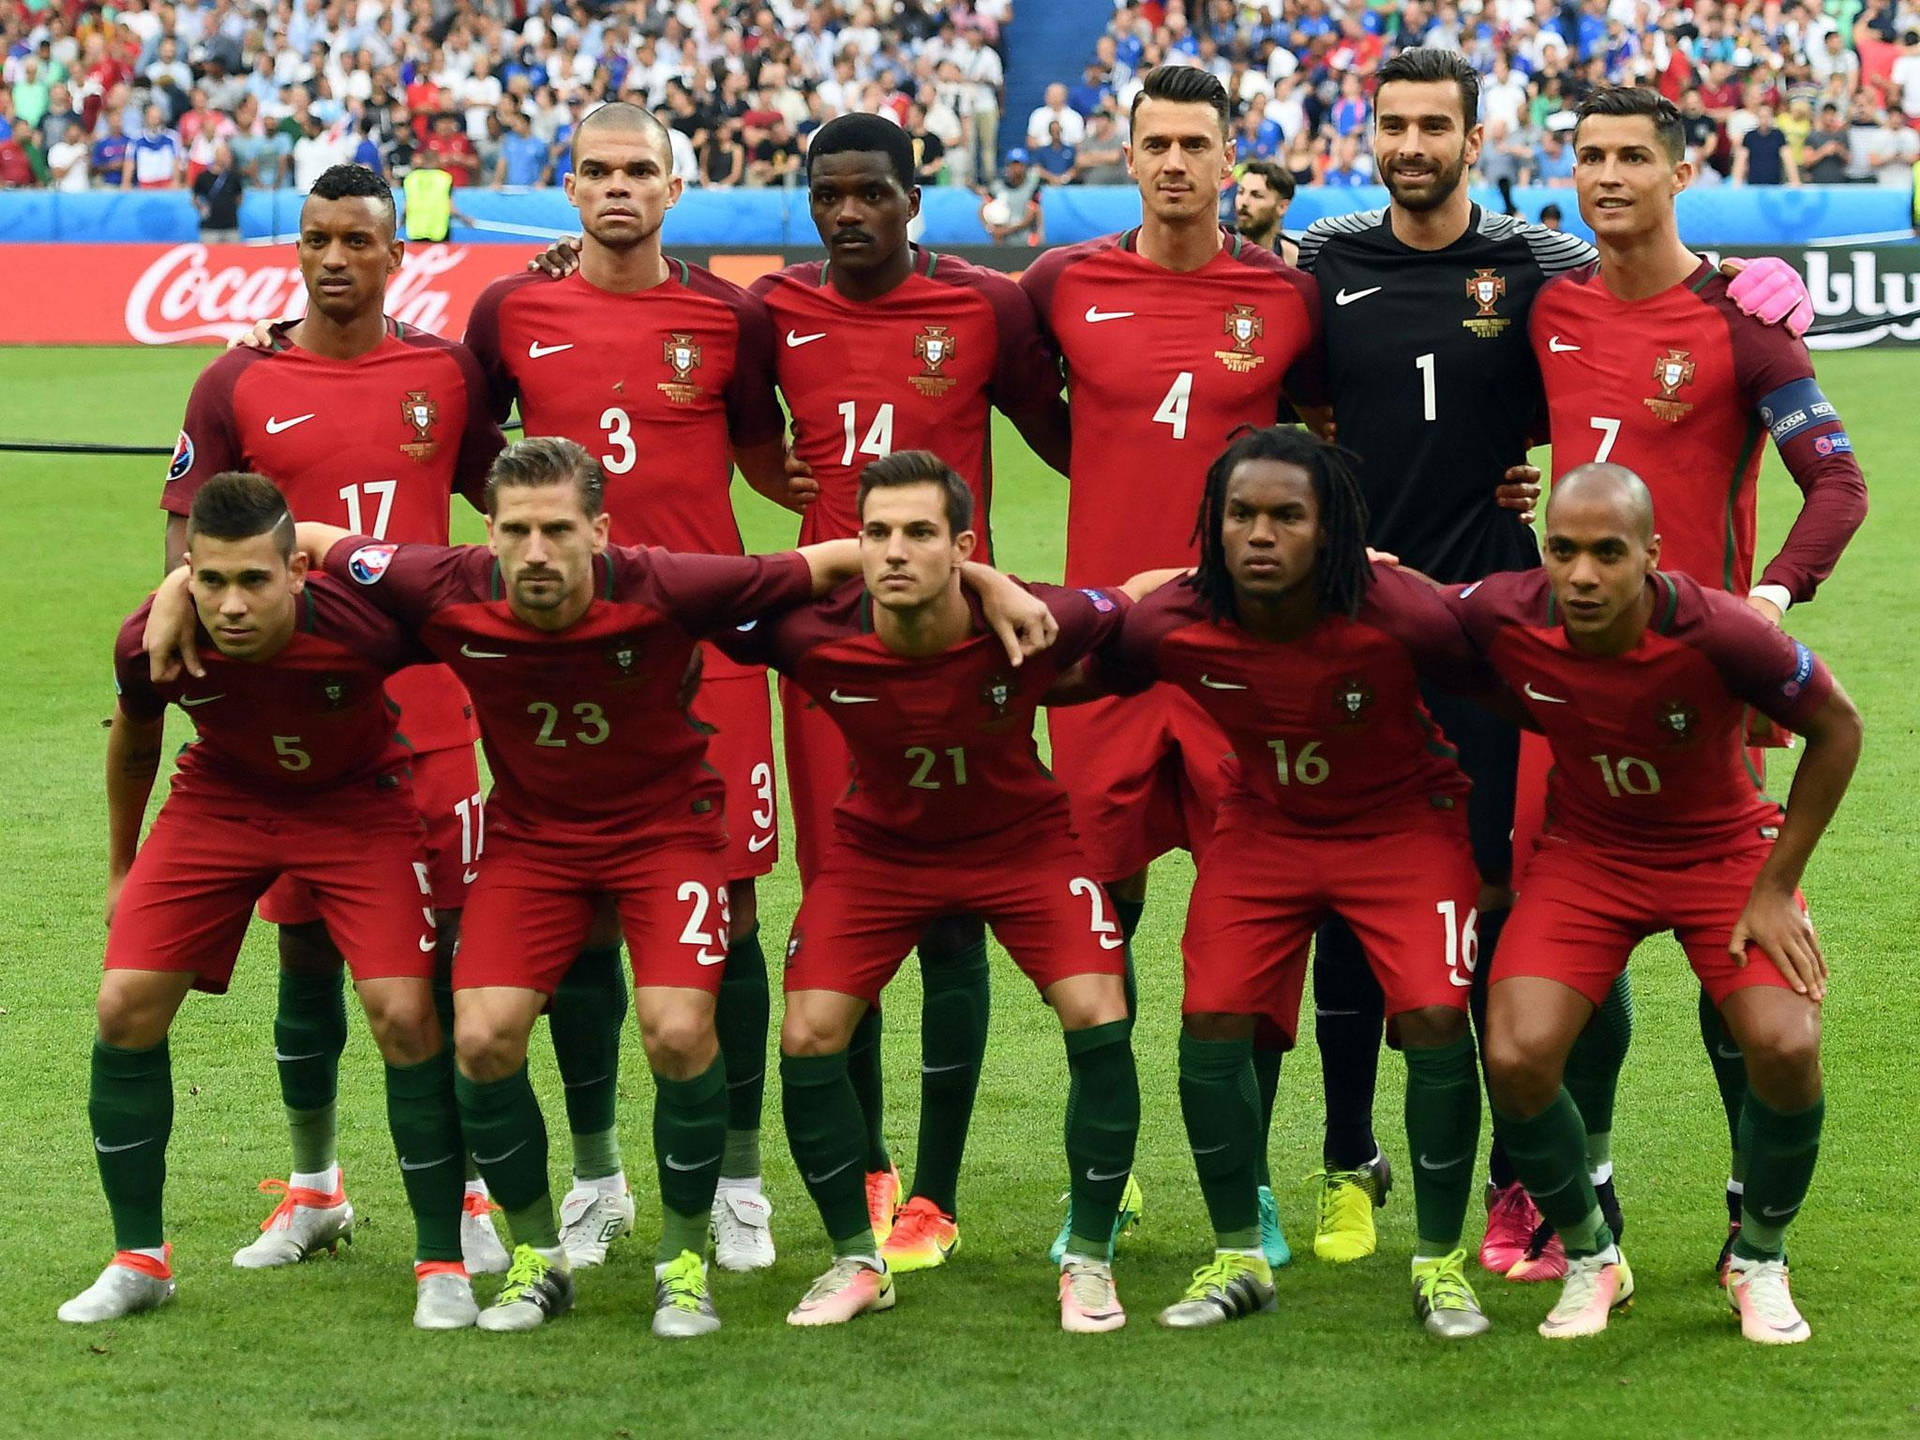 Portugalnationale Fußballmannschaft In Kameradschaftlicher Pose Wallpaper